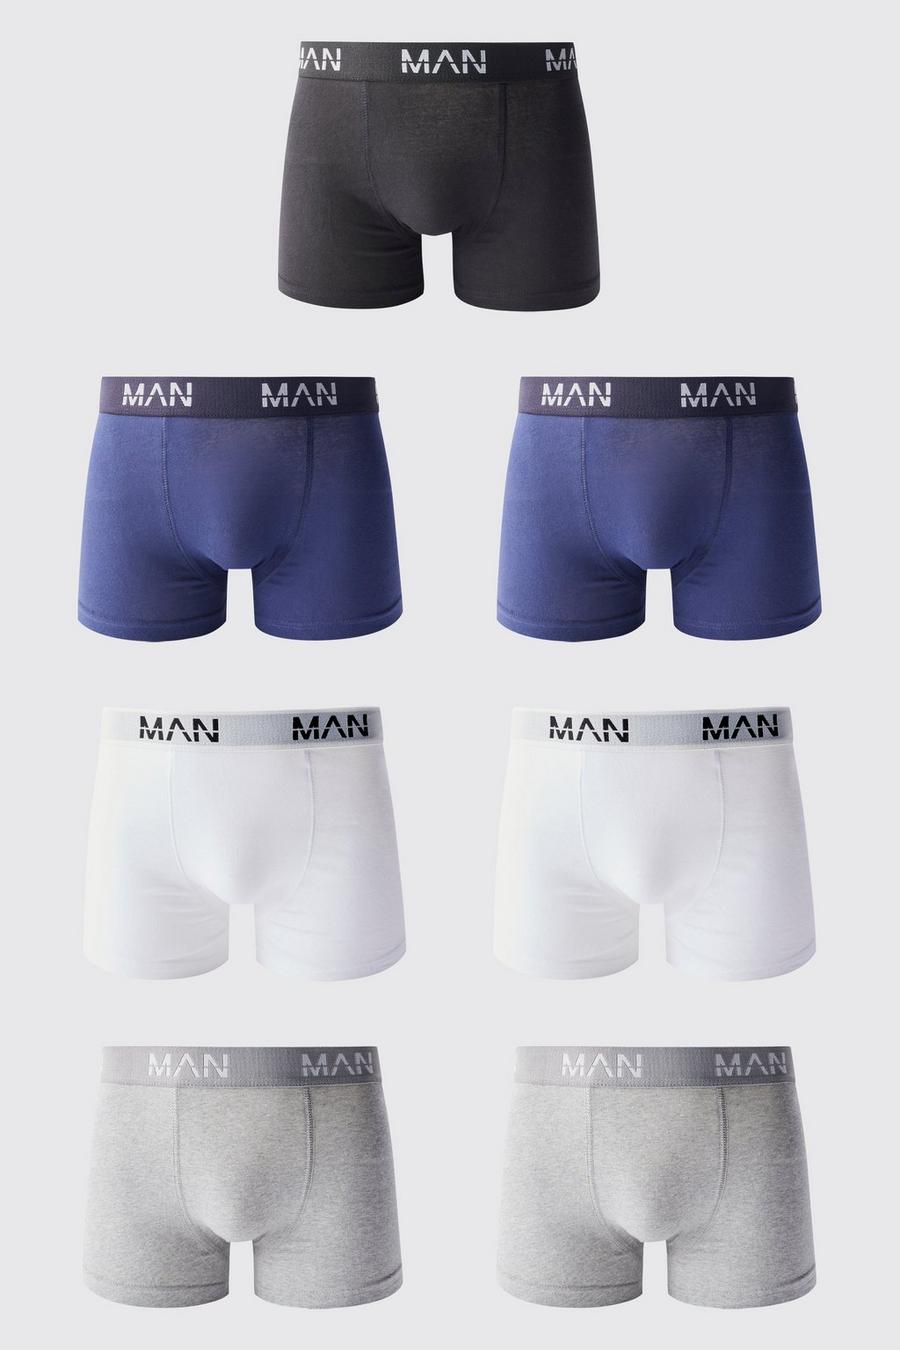 Boxer Man in colori misti - set di 7 paia, Multi